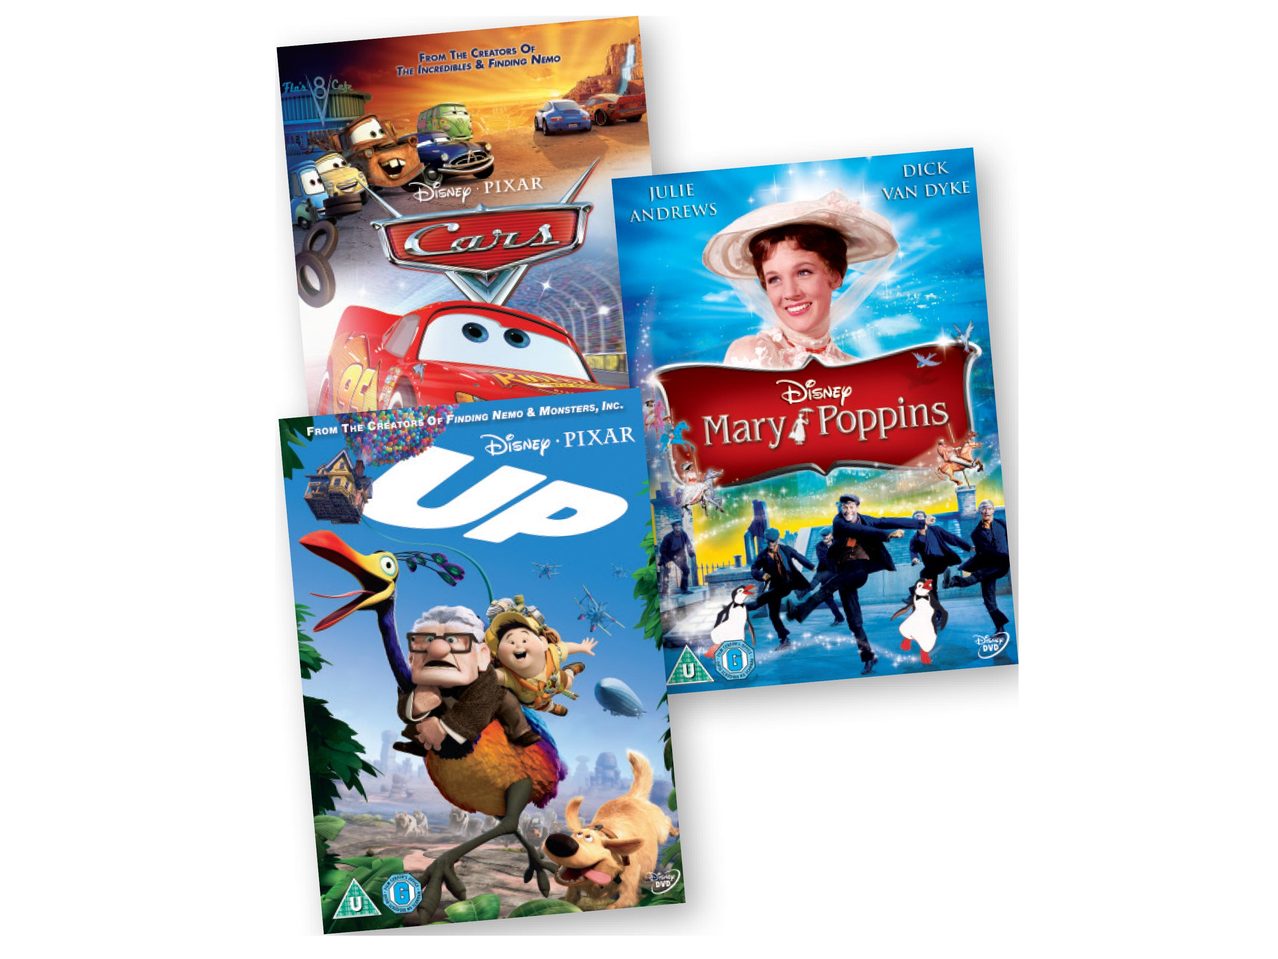 Assorted Disney DVD's